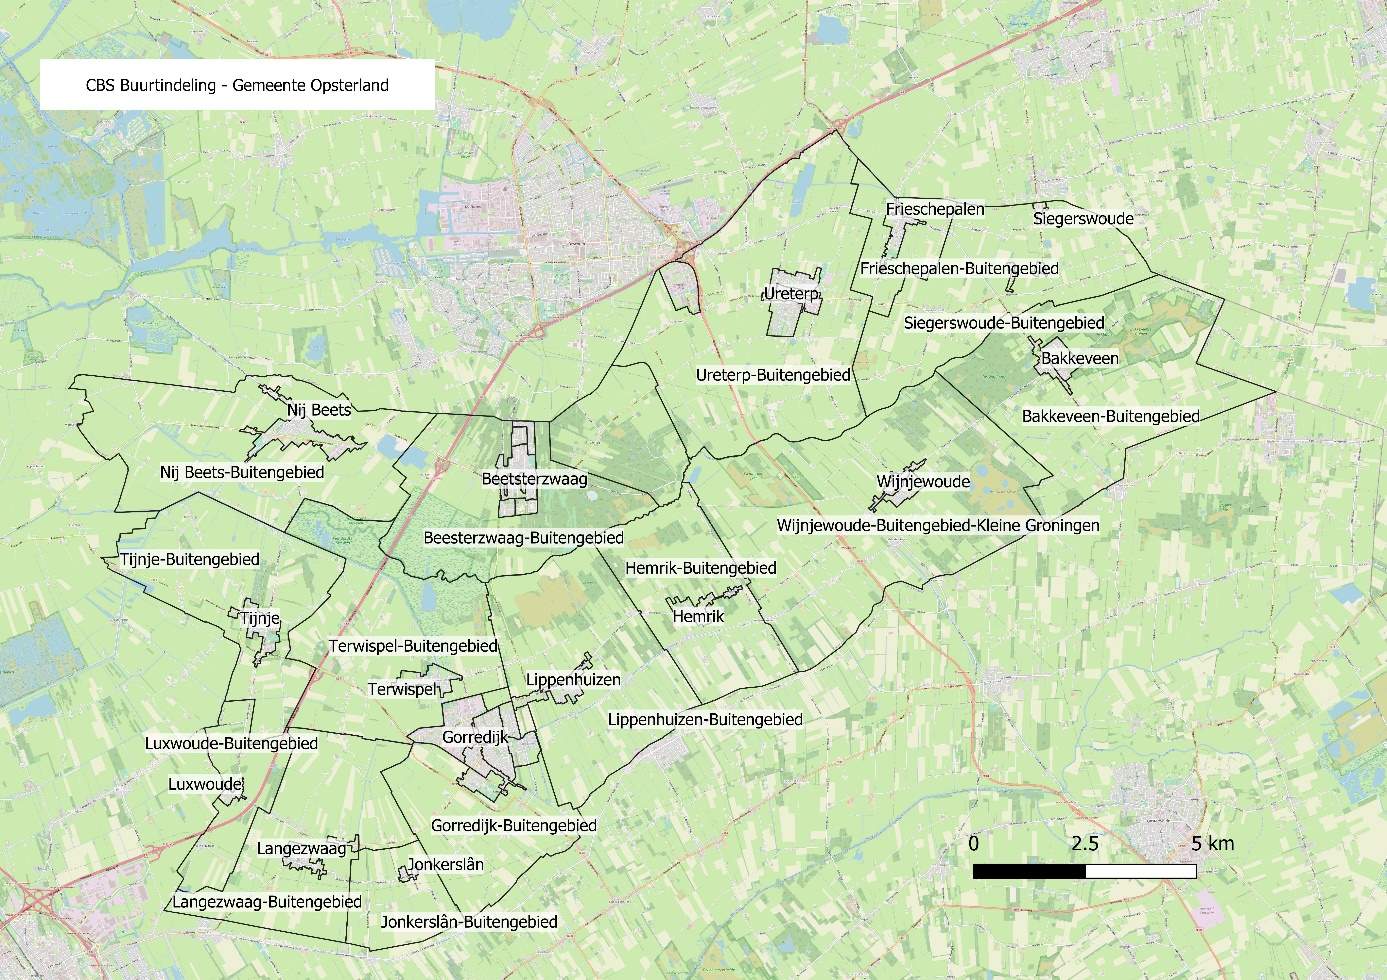 CBS-buurtindeling van de gemeente Opsterland. Voor de buurtindeling van Gorredijk, Ureterp, Beetsterzwaag en Bakkeveen zijn specifieke kaarten opgenomen.